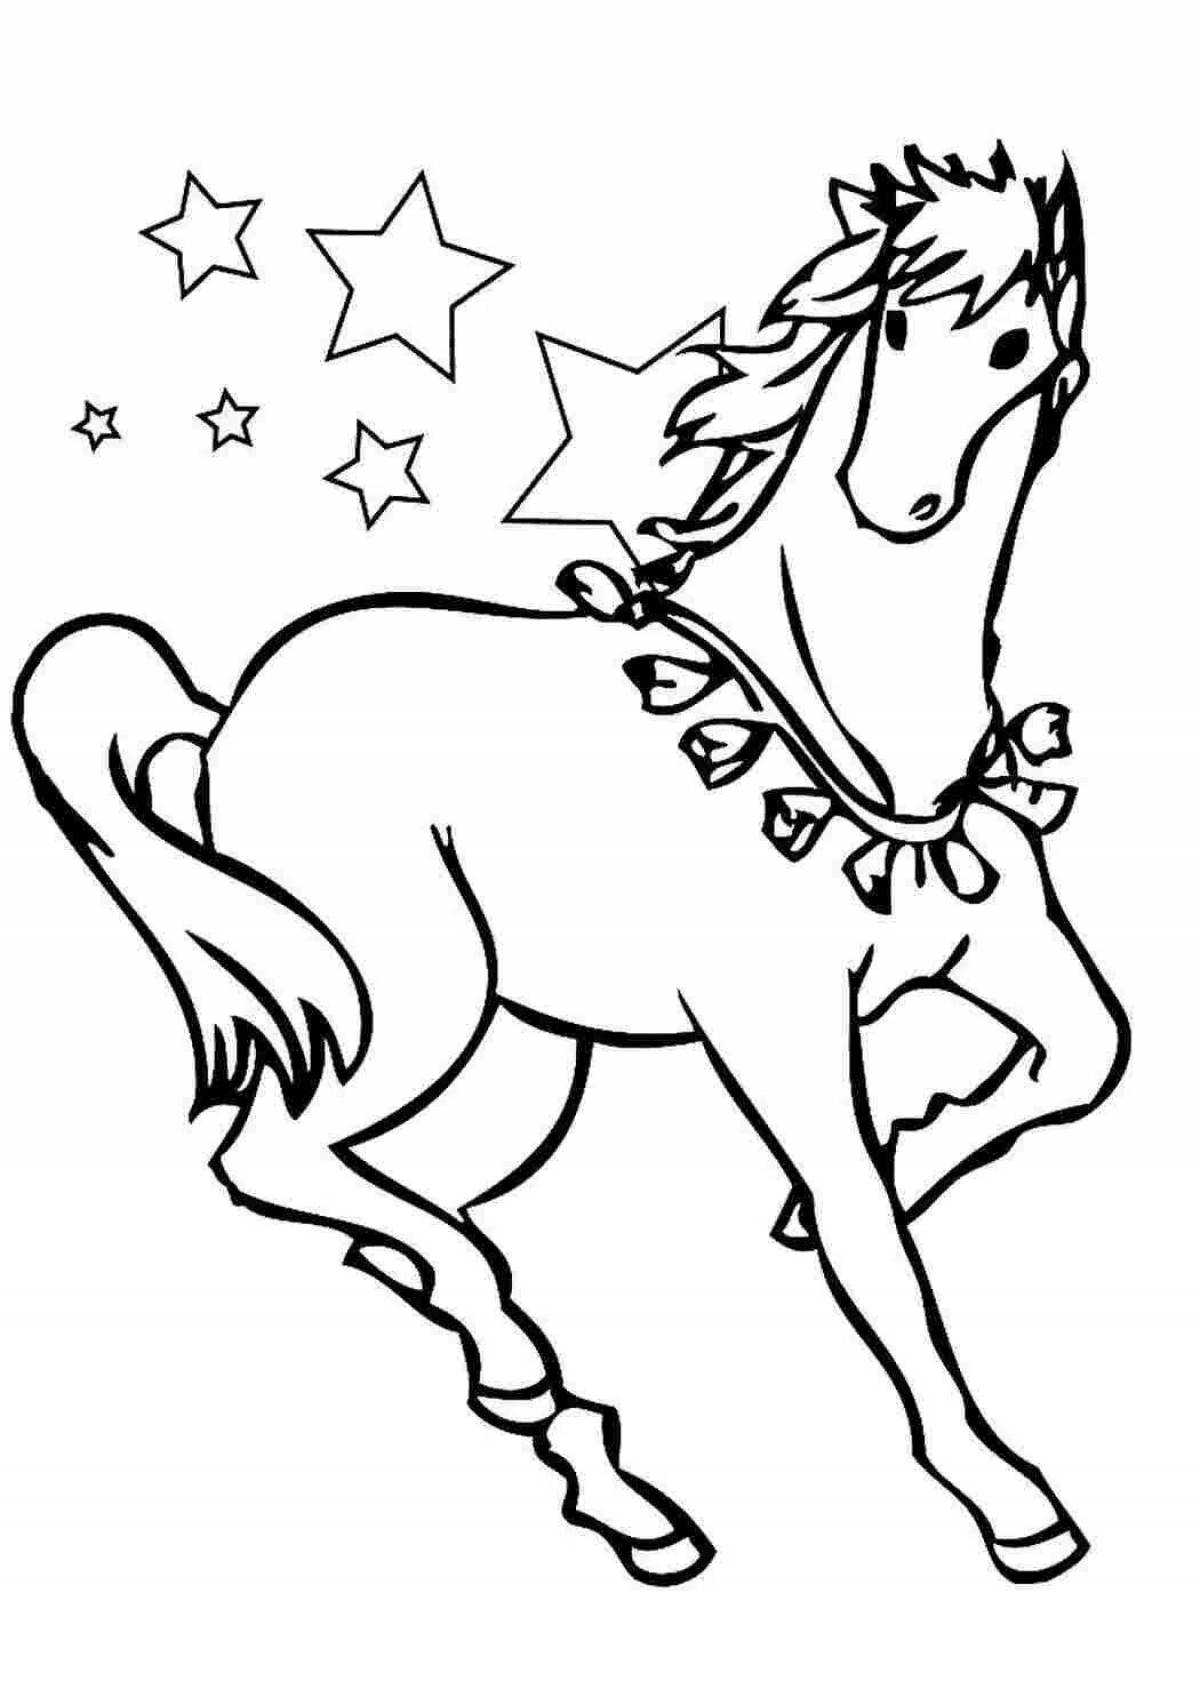 Буйная раскраска лошадь для детей 4-5 лет